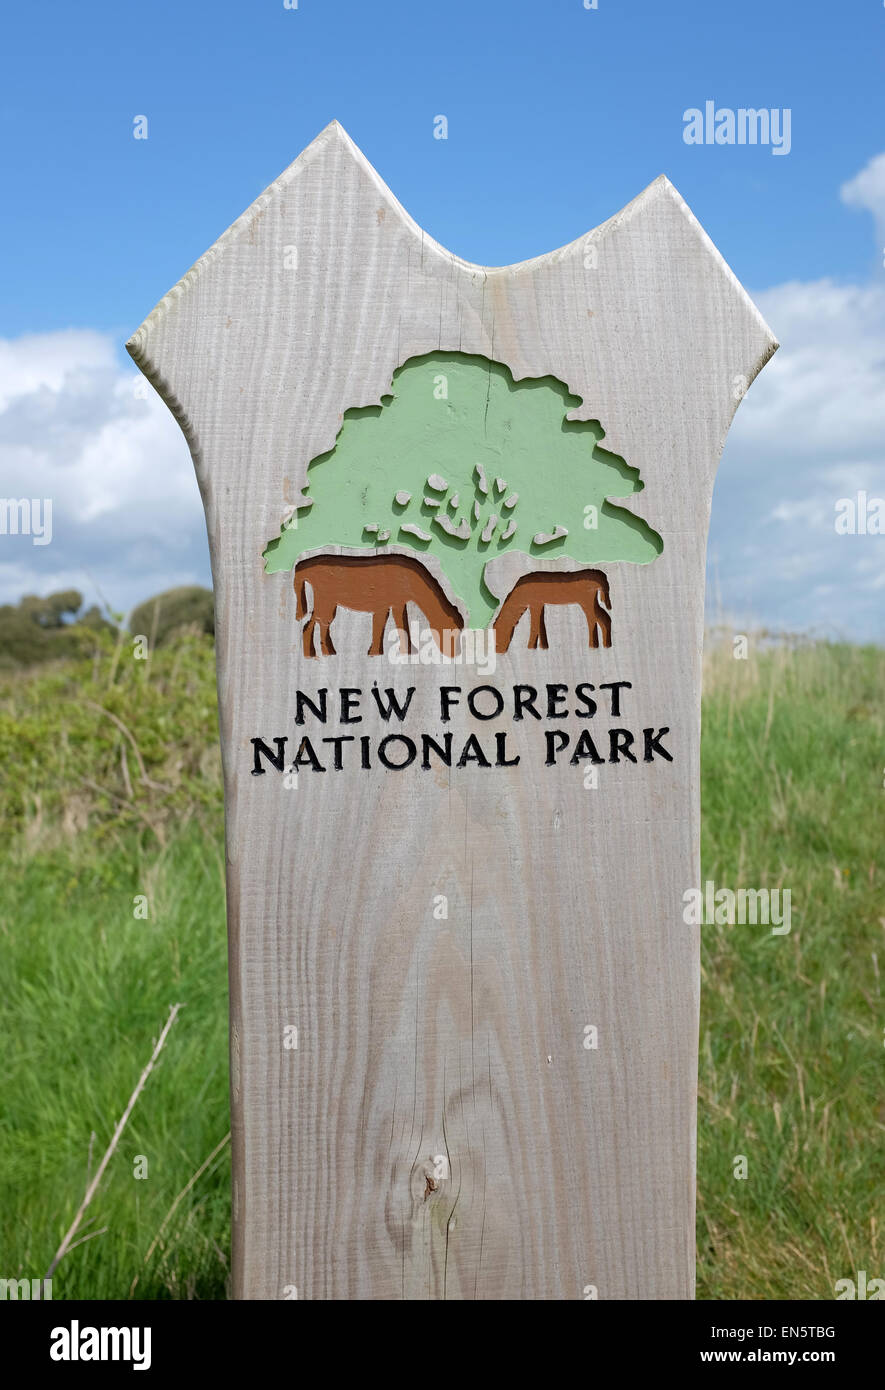 Le parc national New Forest against a blue cloudy sky Banque D'Images